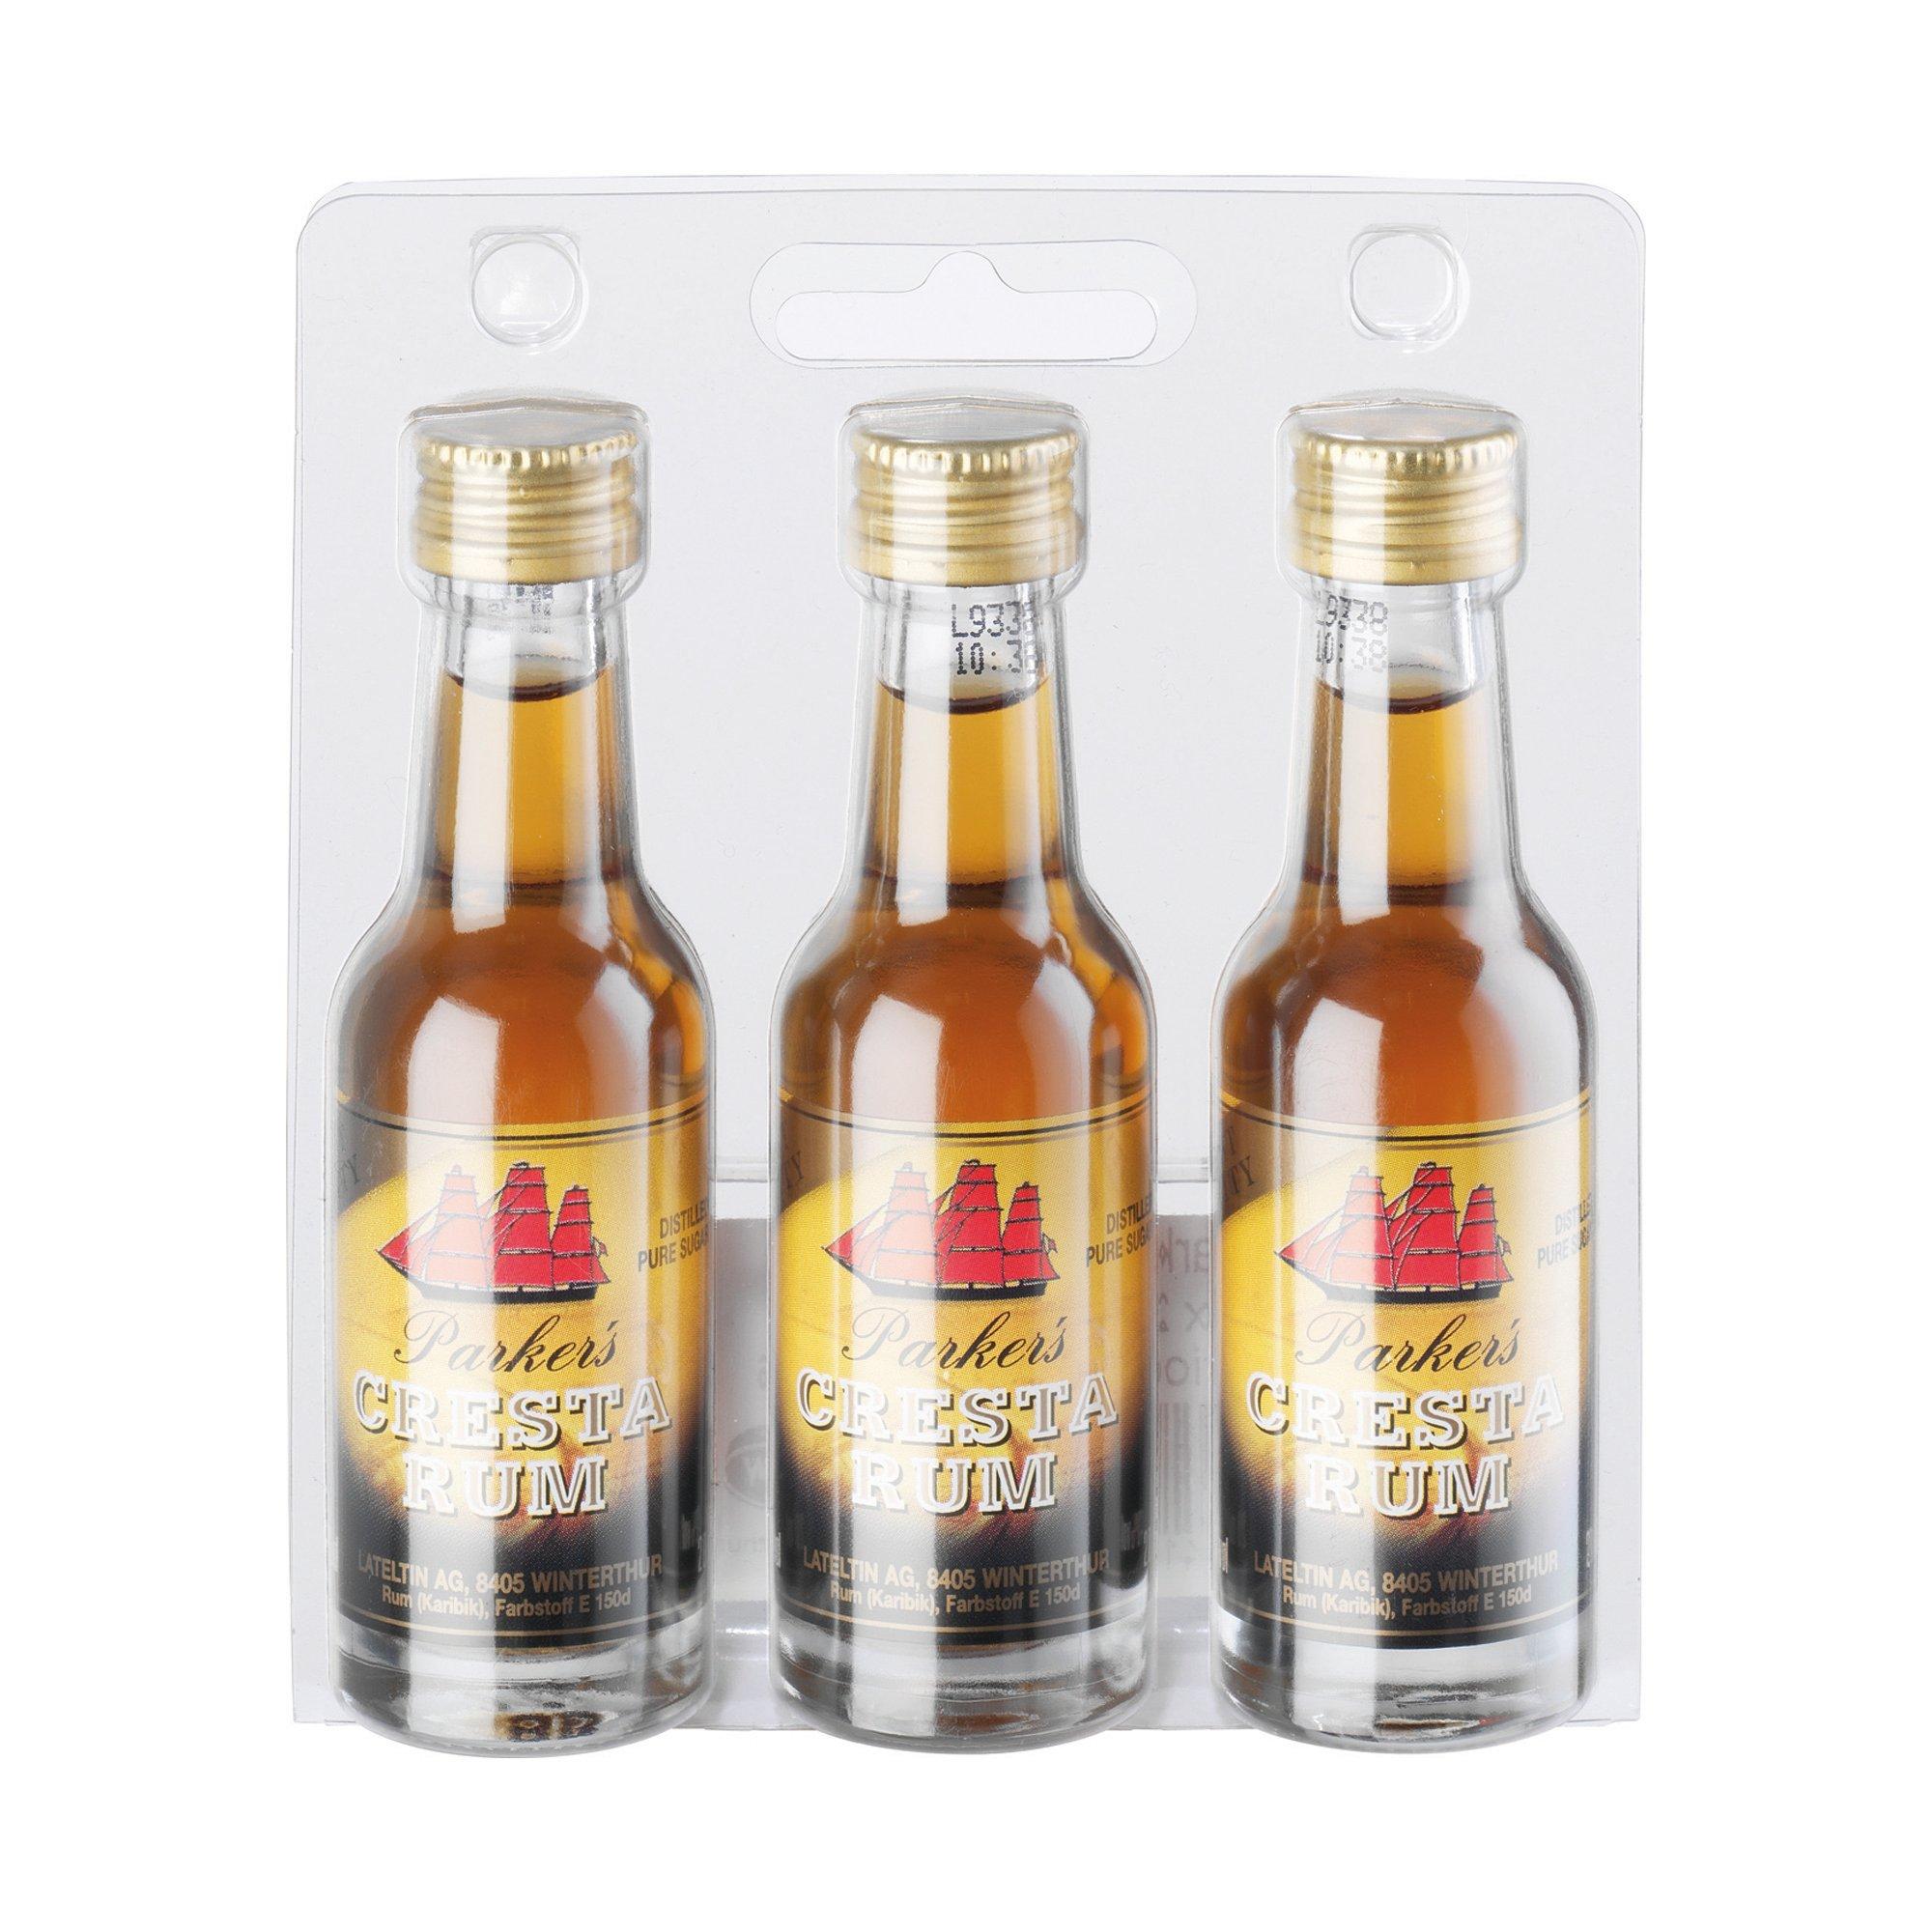 Image of Lateltin Parkers Cresta Rum - Trio Mini - 3x2cl